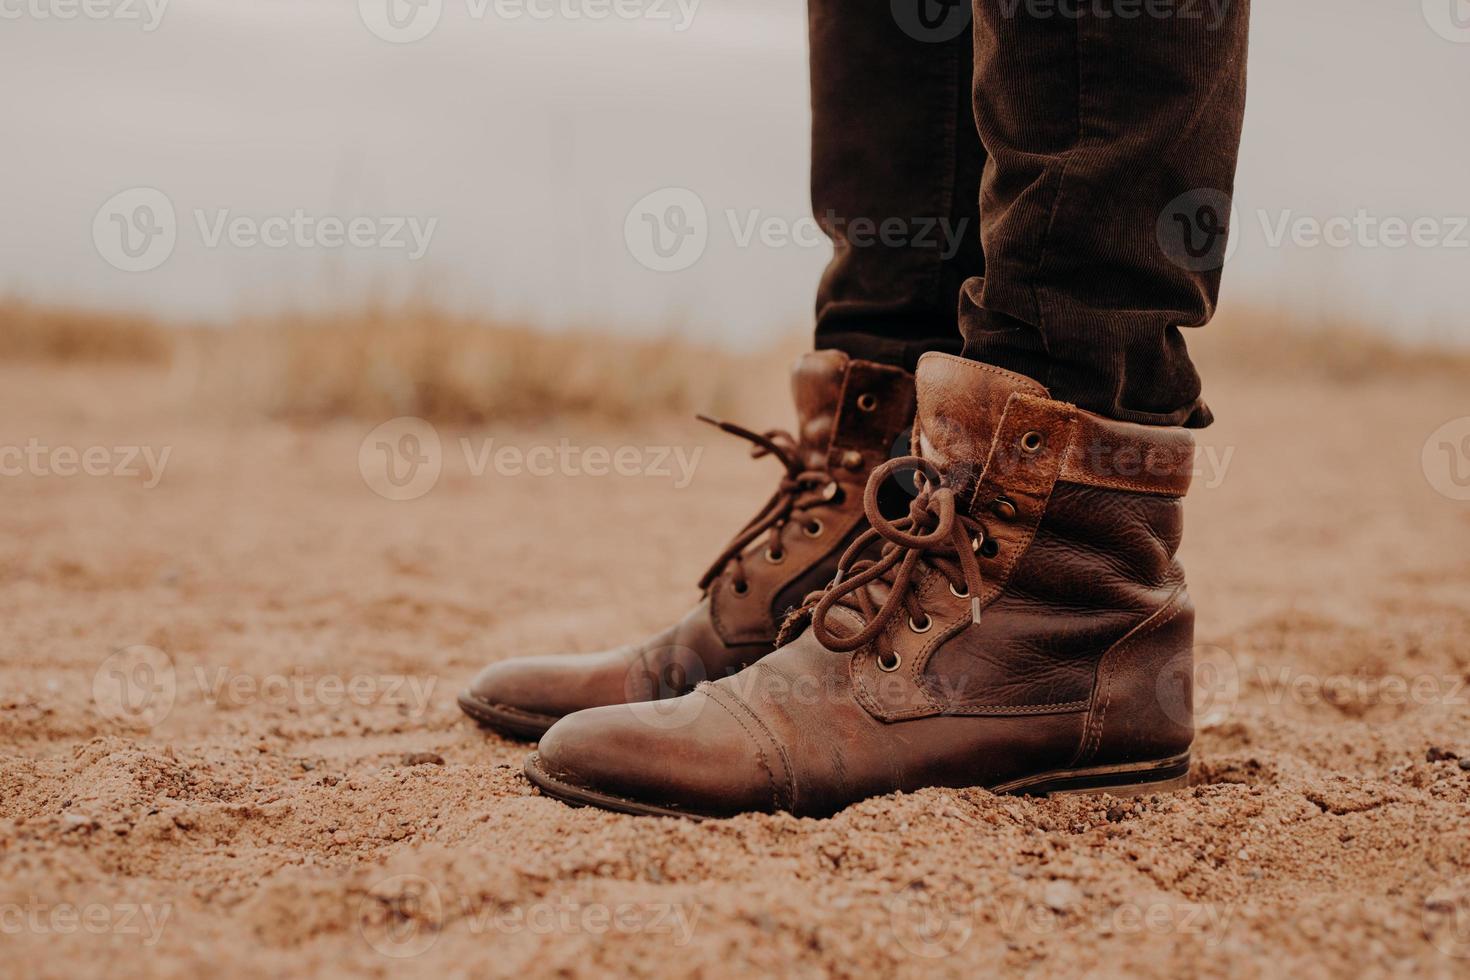 tiro lateral do homem em sapatos marrons desgrenhados na superfície leiga. par de botas na areia. macho tem caminhada ao ar livre em calçados velhos. foto